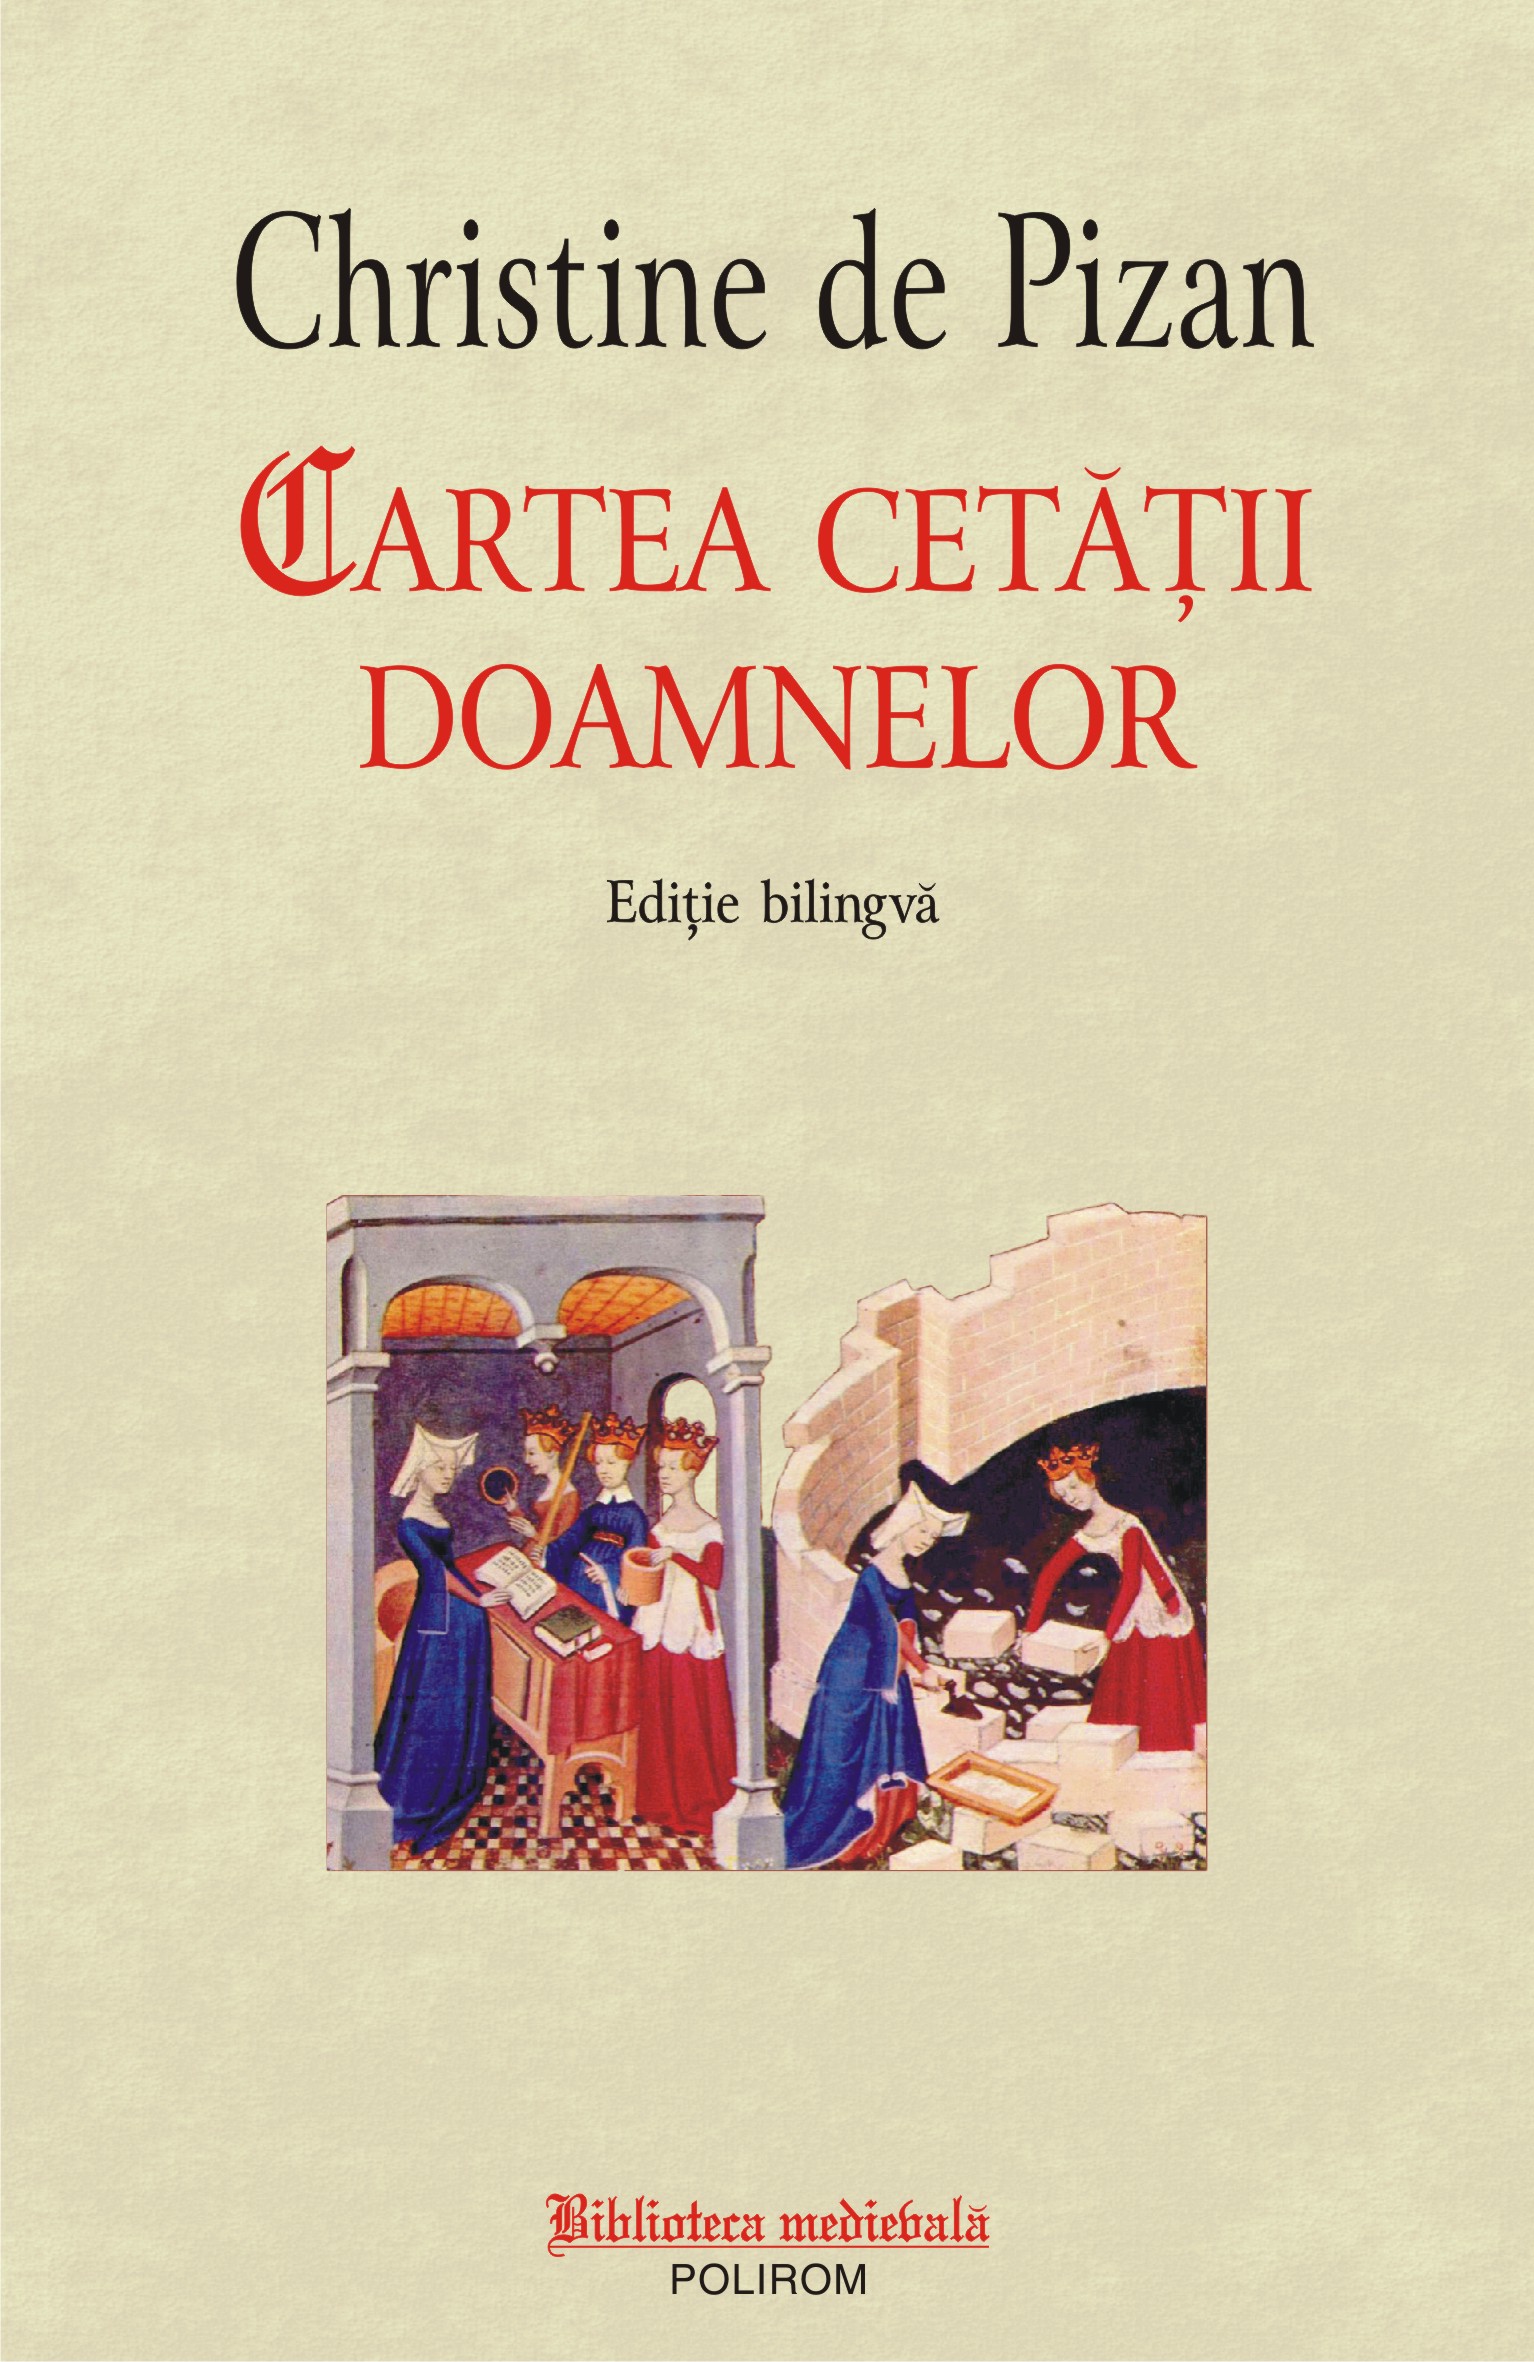 eBook Cartea cetatii doamnelor - Christine de Pizan